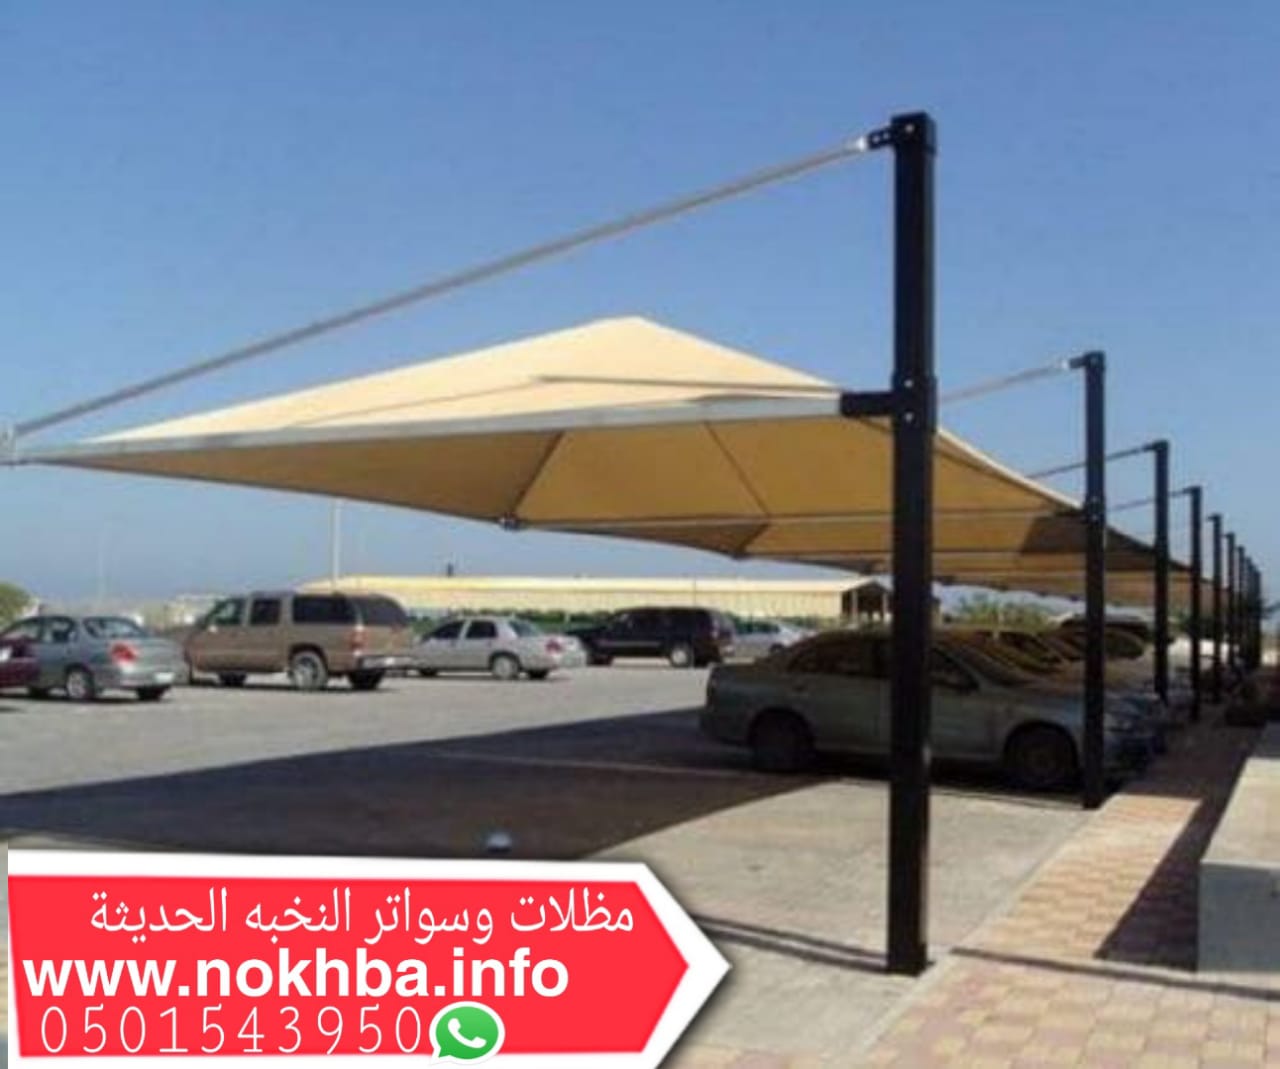 تركيب مظلات في مكة 0501543950 بافضل سعر للمتر P_1873x531u6